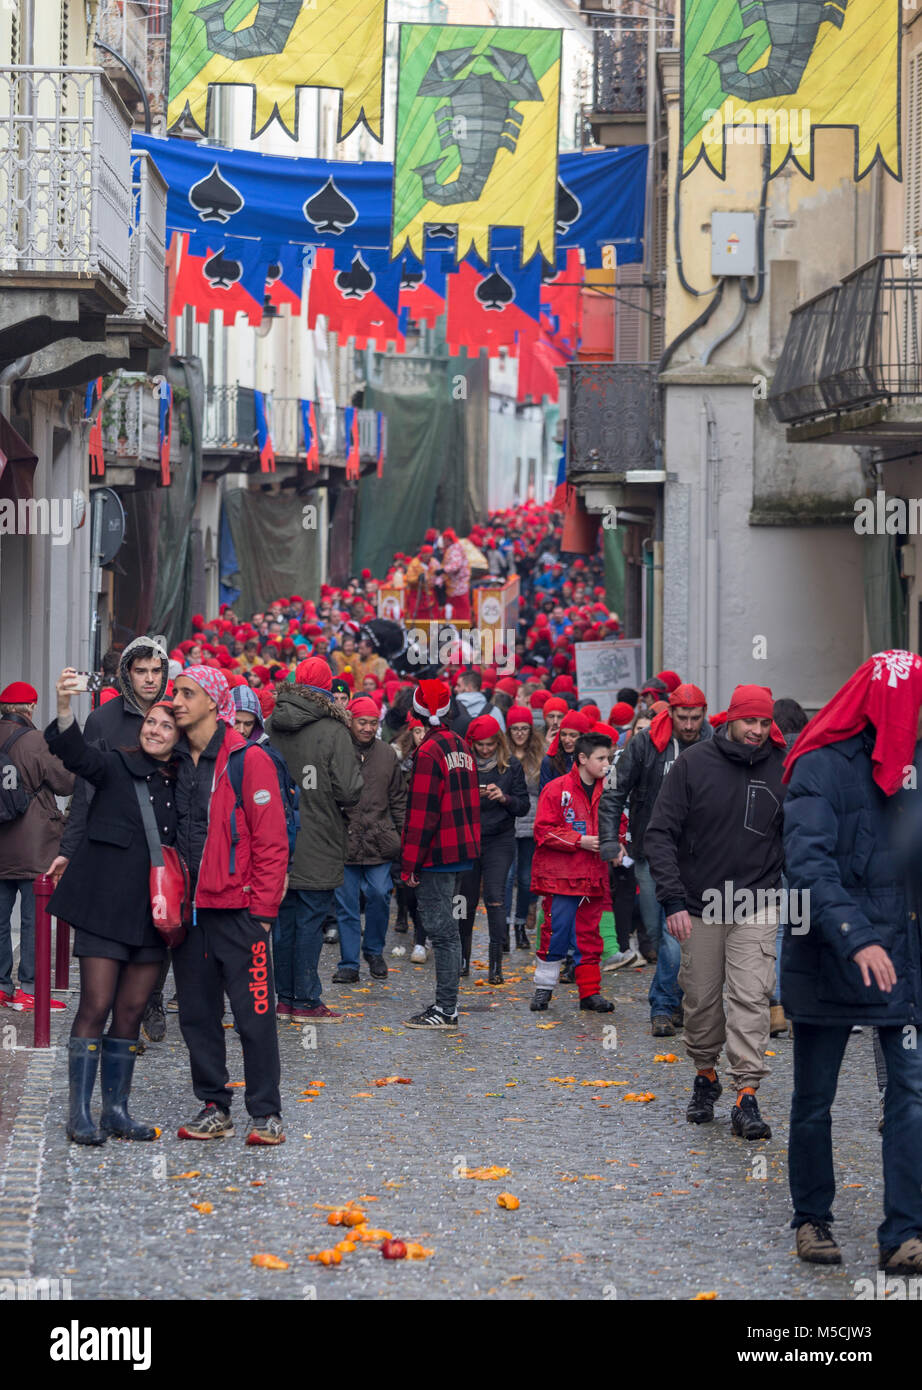 IVREA, Italia - 11 febbraio 2018: i partecipanti della battaglia delle arance durante il carnevale storico di Ivrea, Italia. Foto Stock